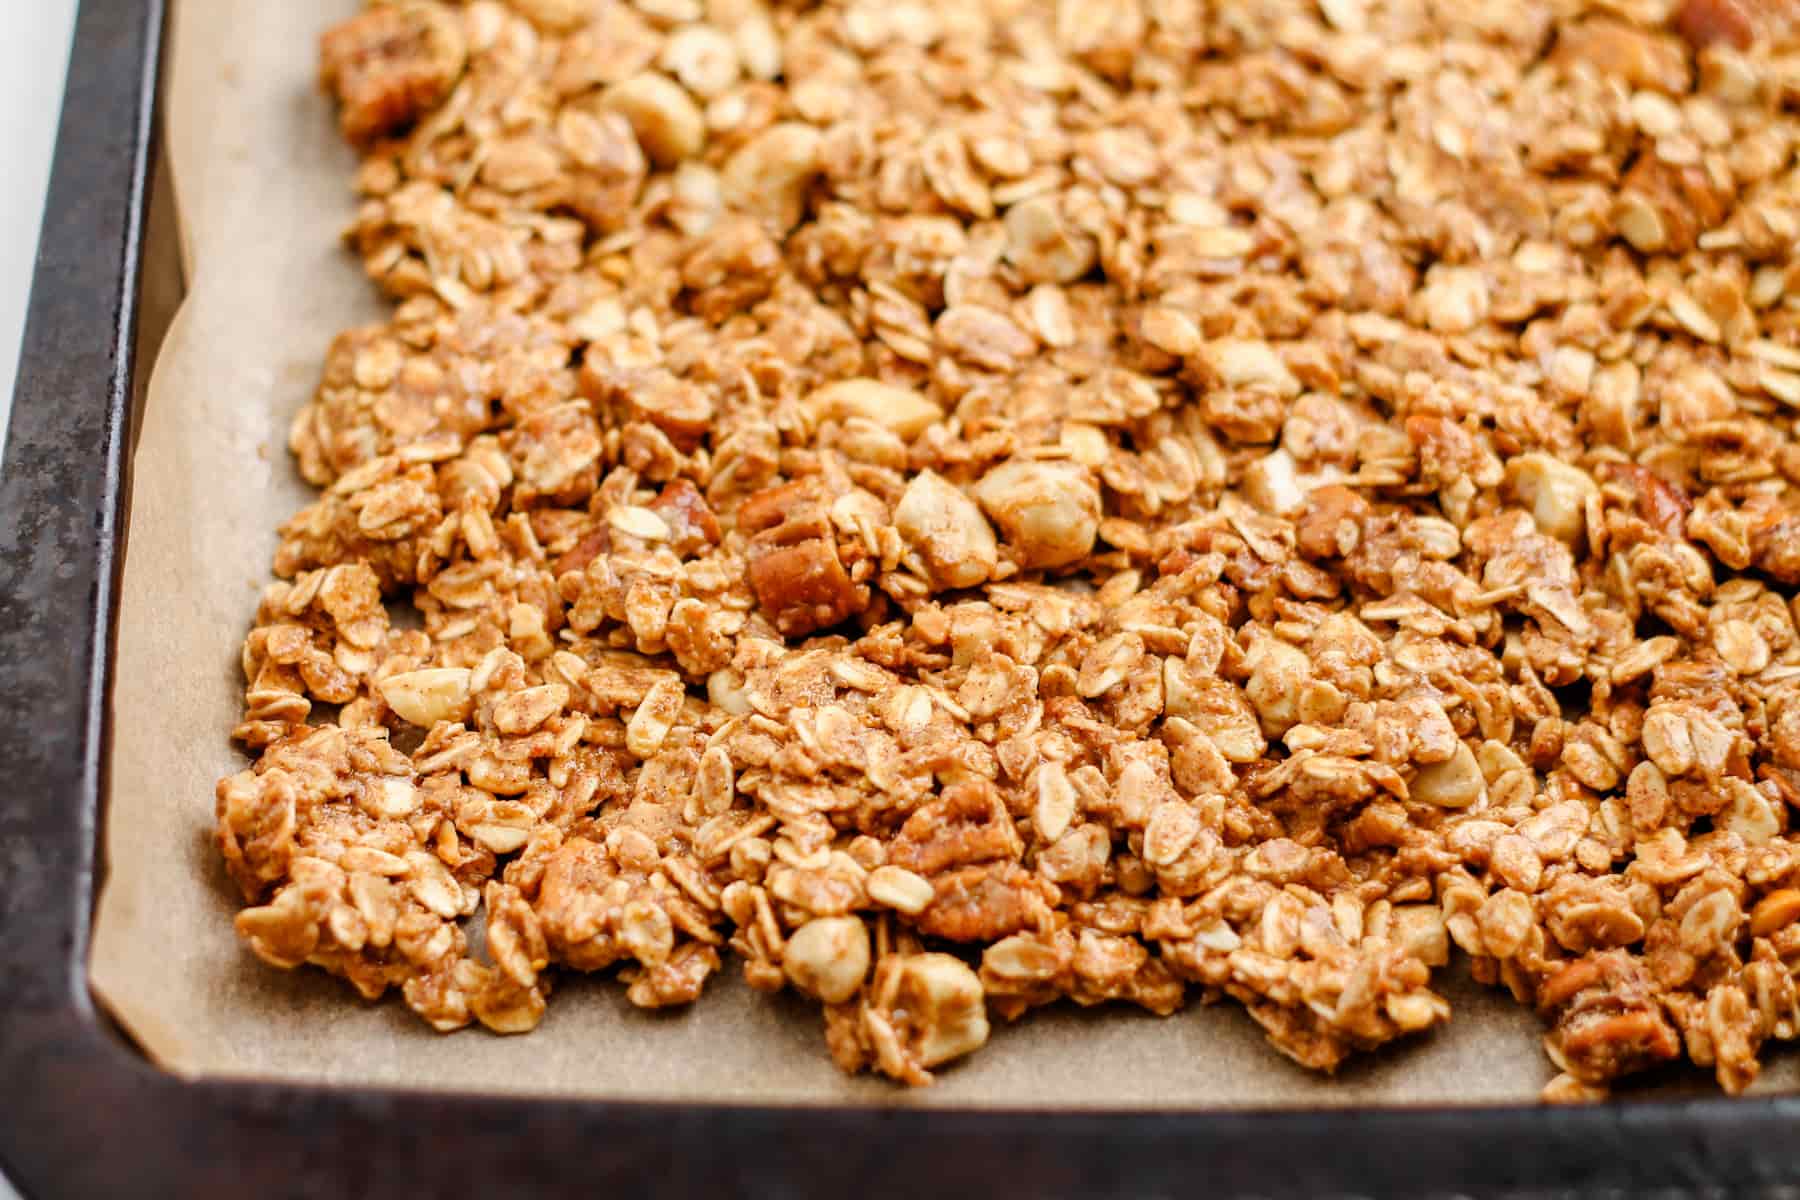 granola mixture spread onto a baking sheet.